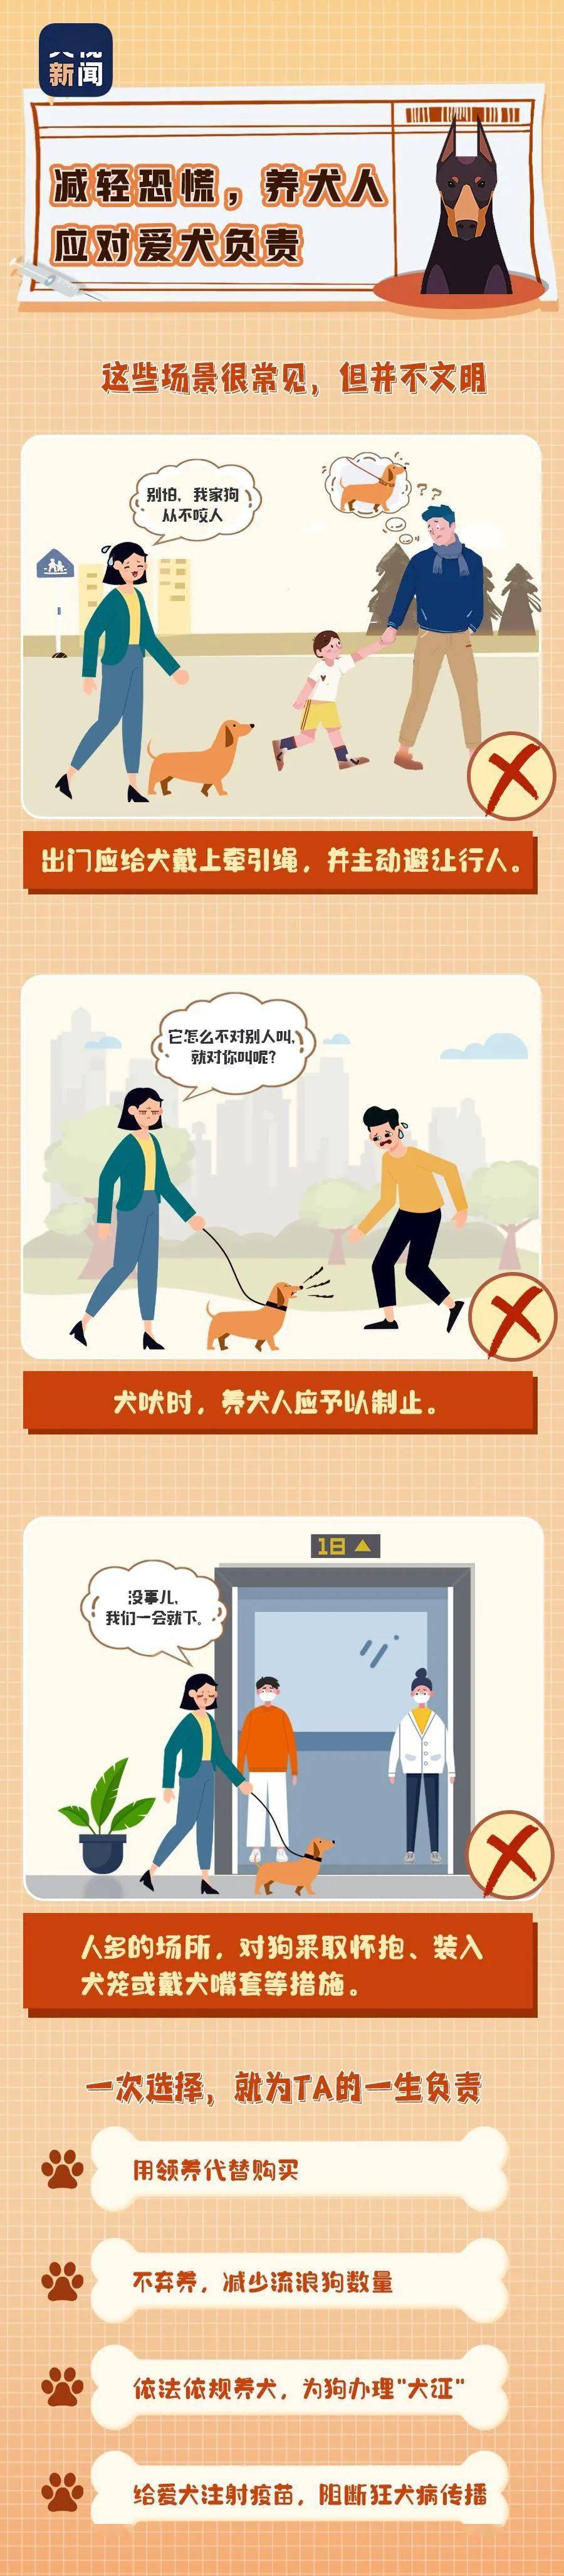 文明养犬  温馨提示应按规定佩戴犬牌并采取系犬绳等措施携带犬只出户